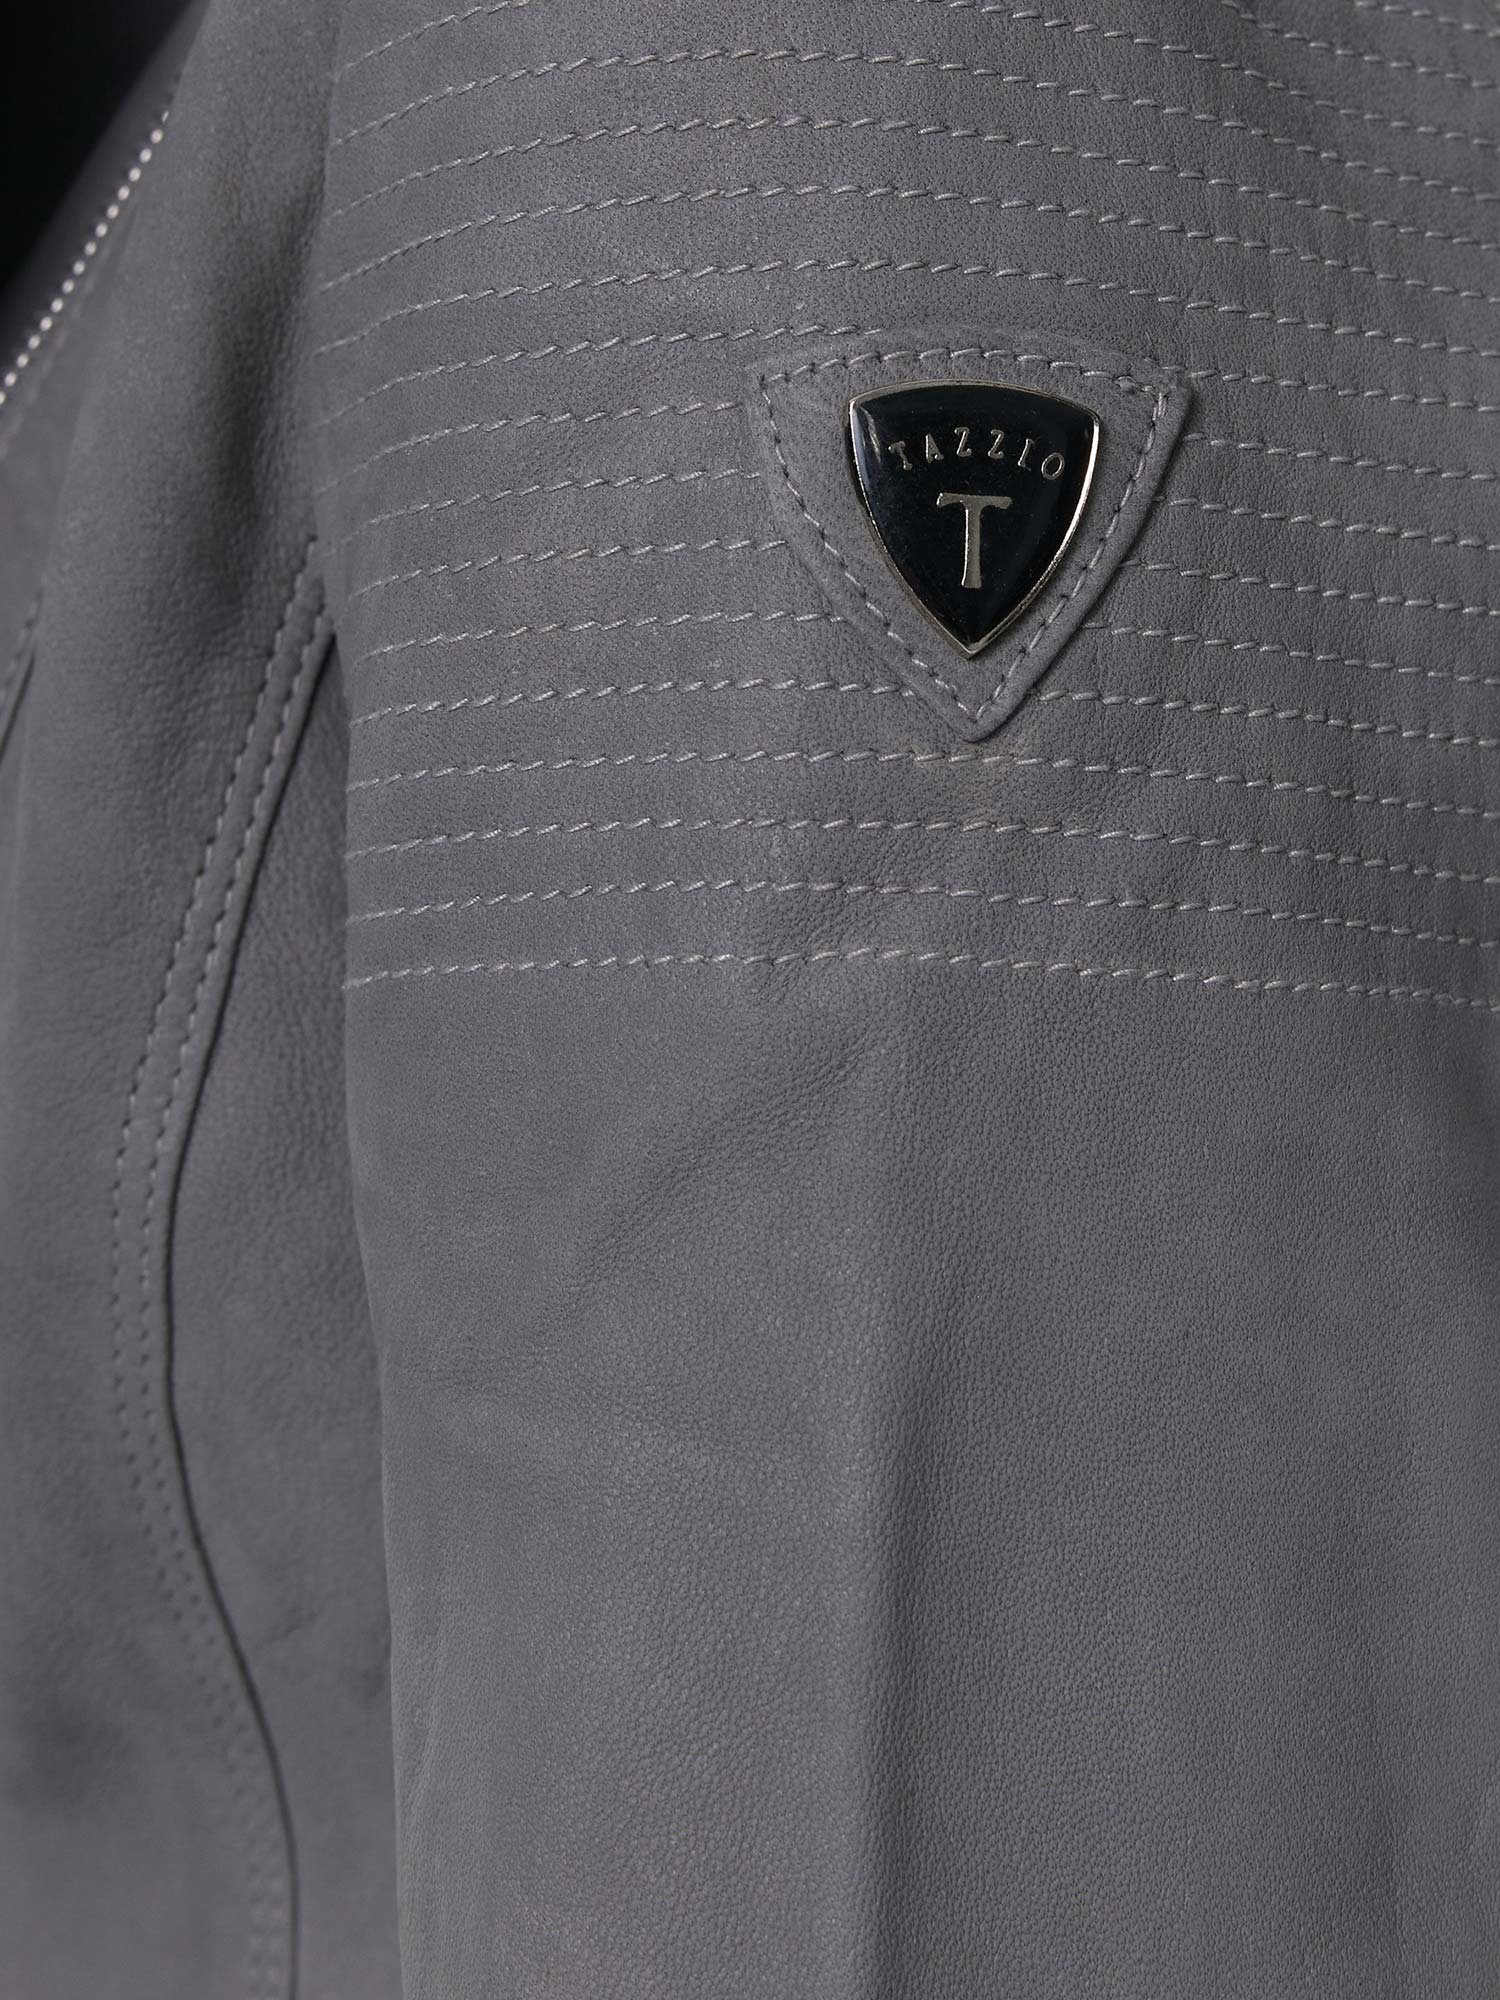 Tazzio Lederjacke F500 Damen Leder Look Biker Reverskragen grau im Zipper-Details mit & Jacke